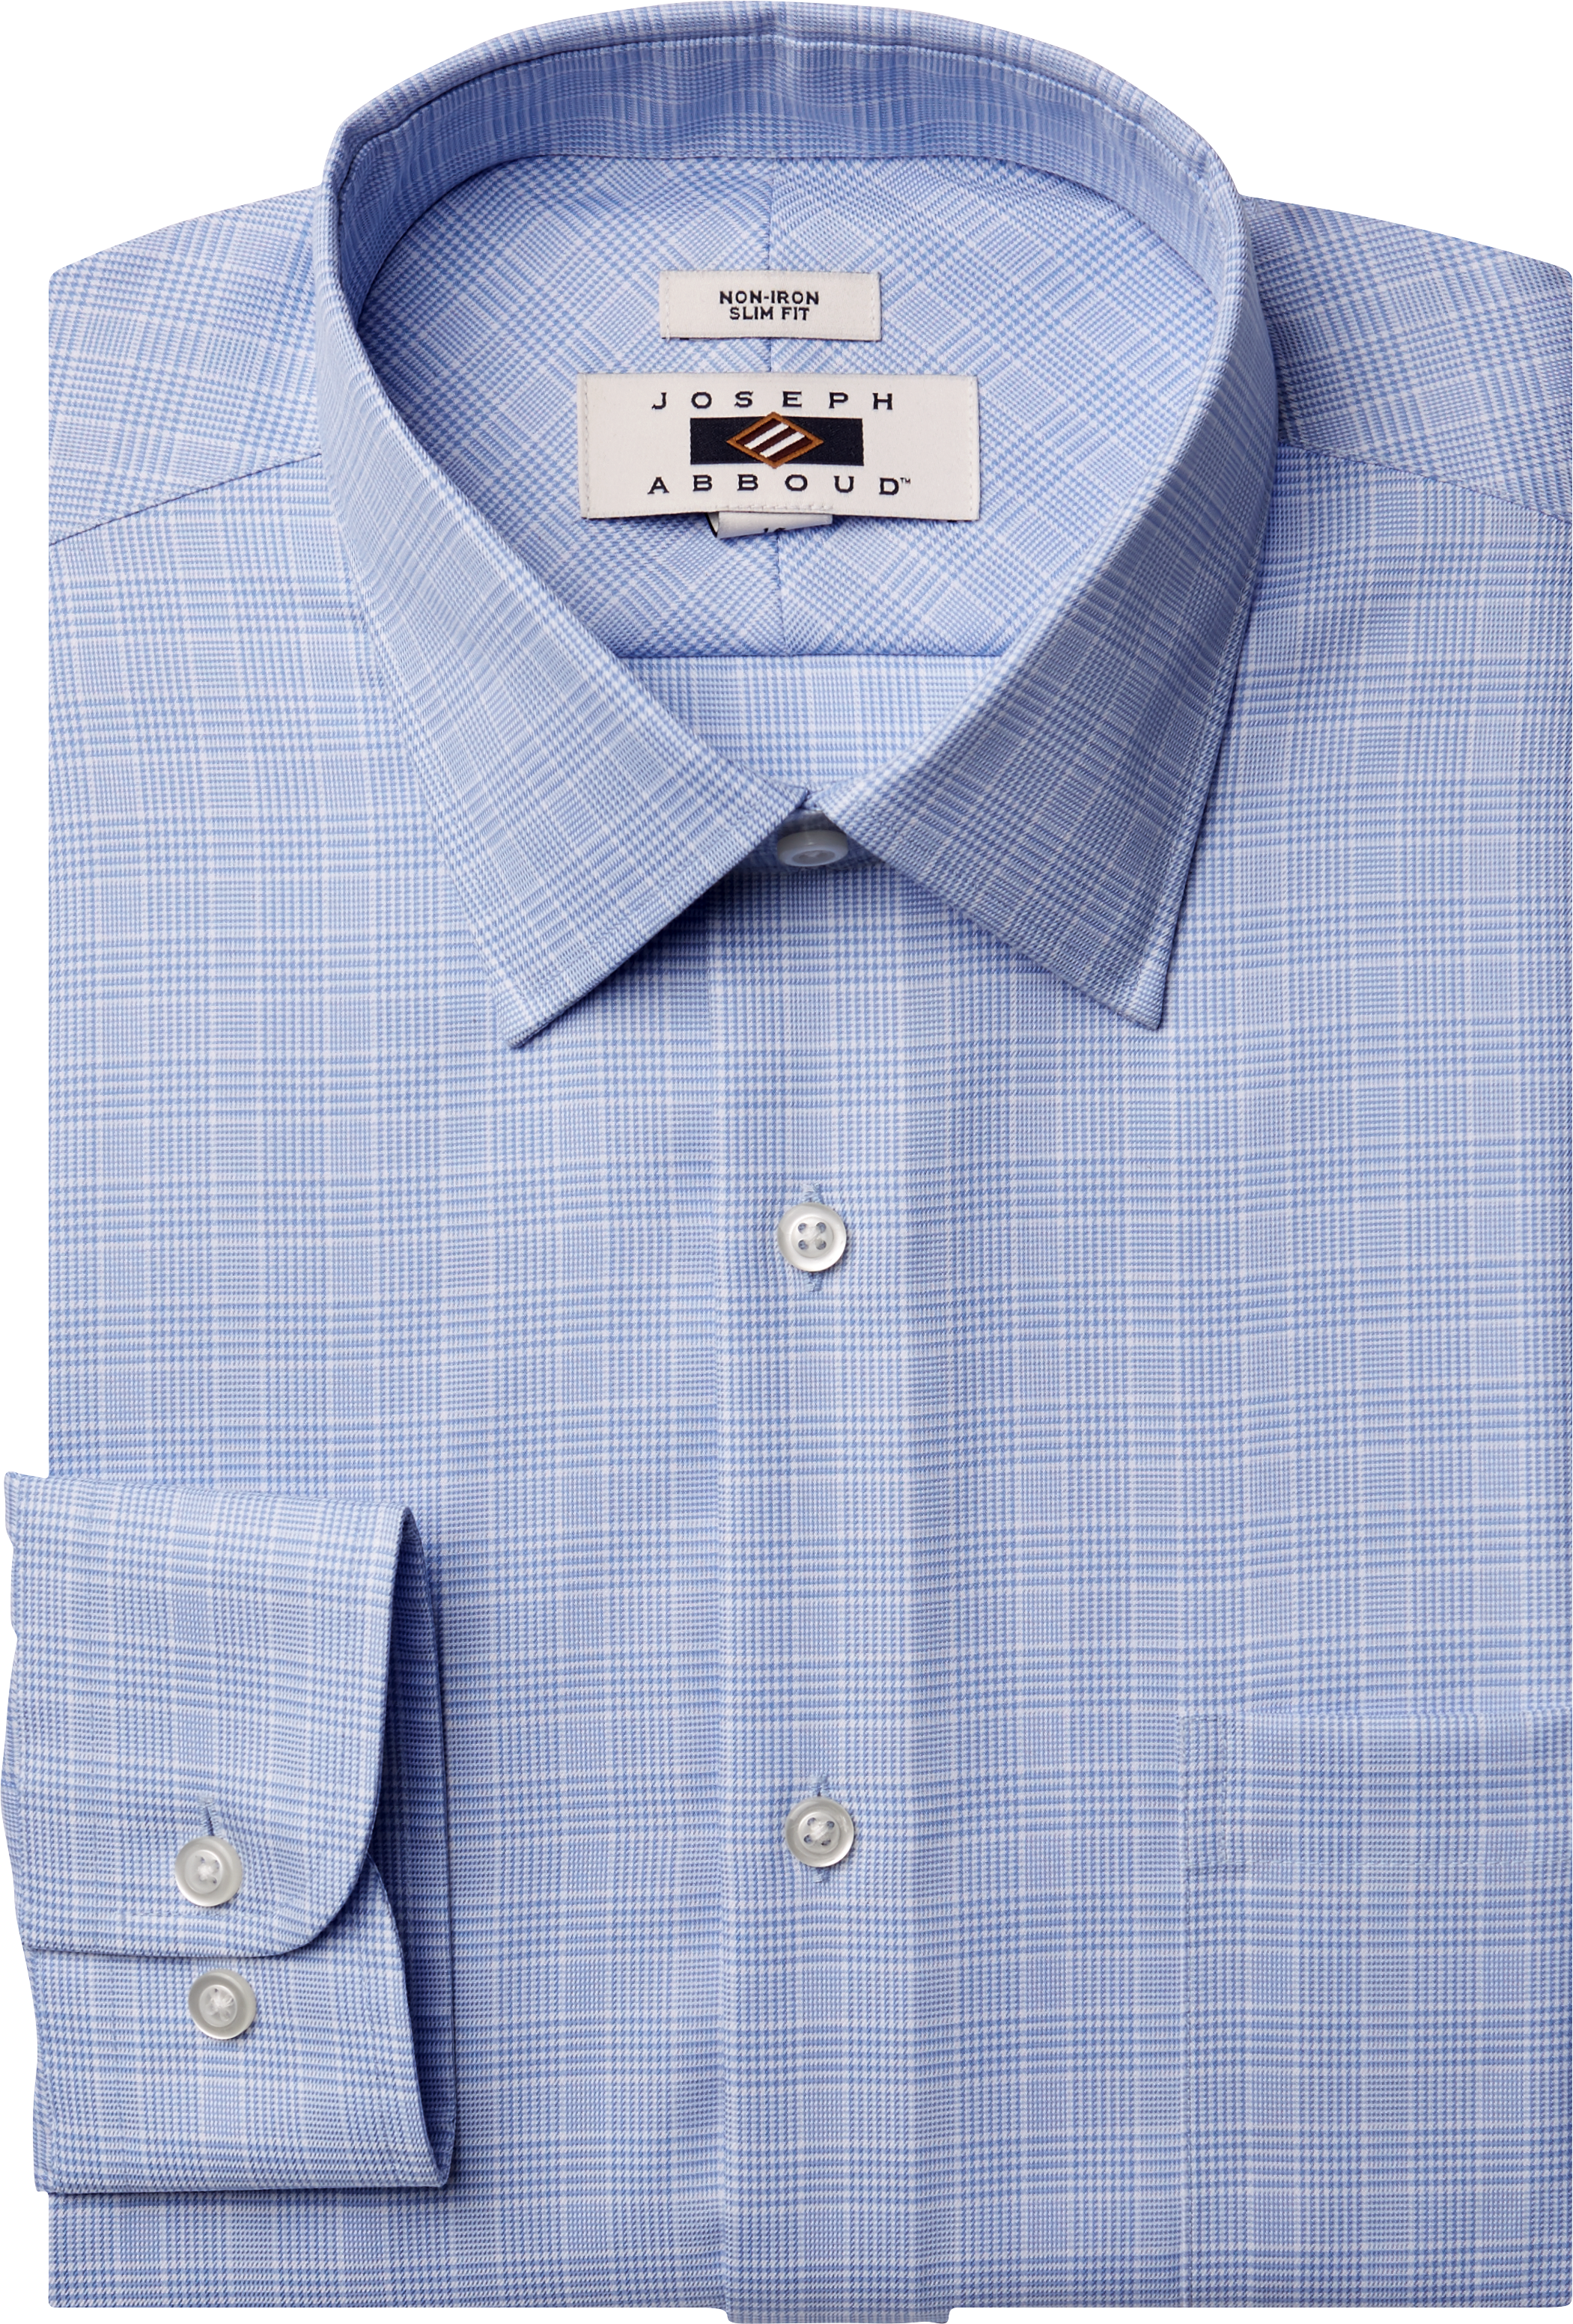 Joseph Abboud Blue Plaid Slim Fit Dress Shirt - Men's Sale | Men's ...